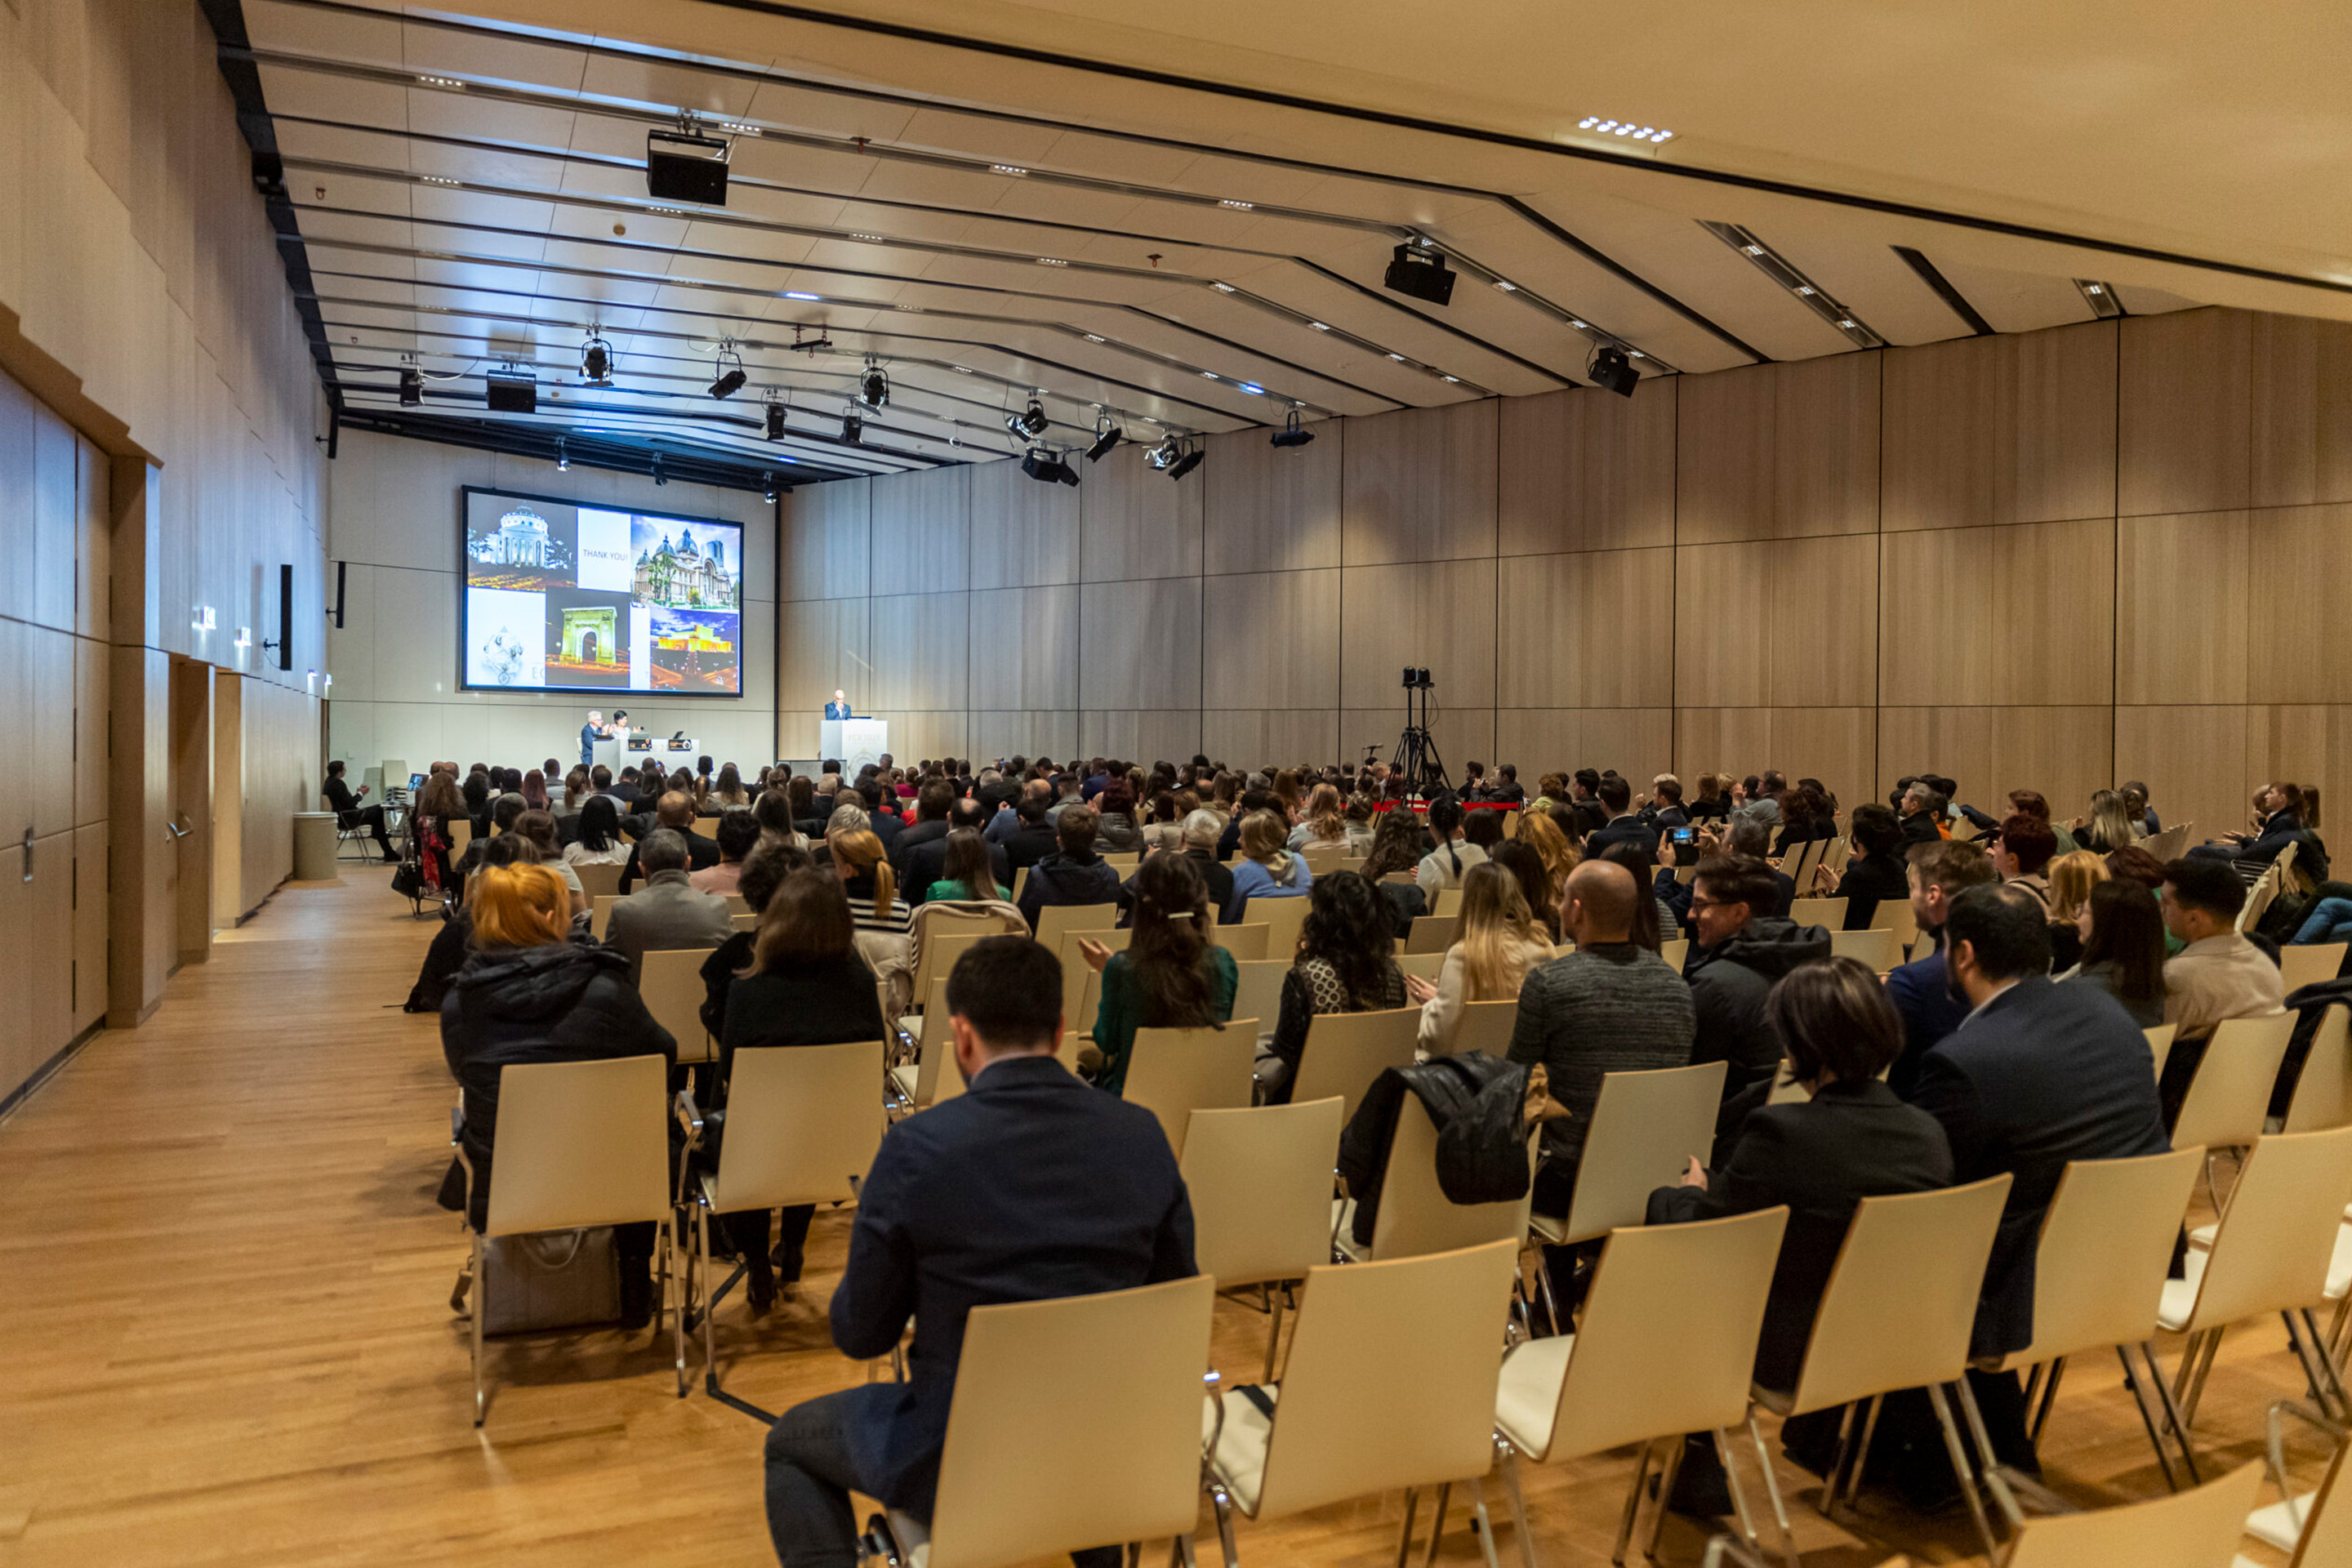 Foto: Holzener Saal voller Stuehle und Menschen bei einem Vortrag